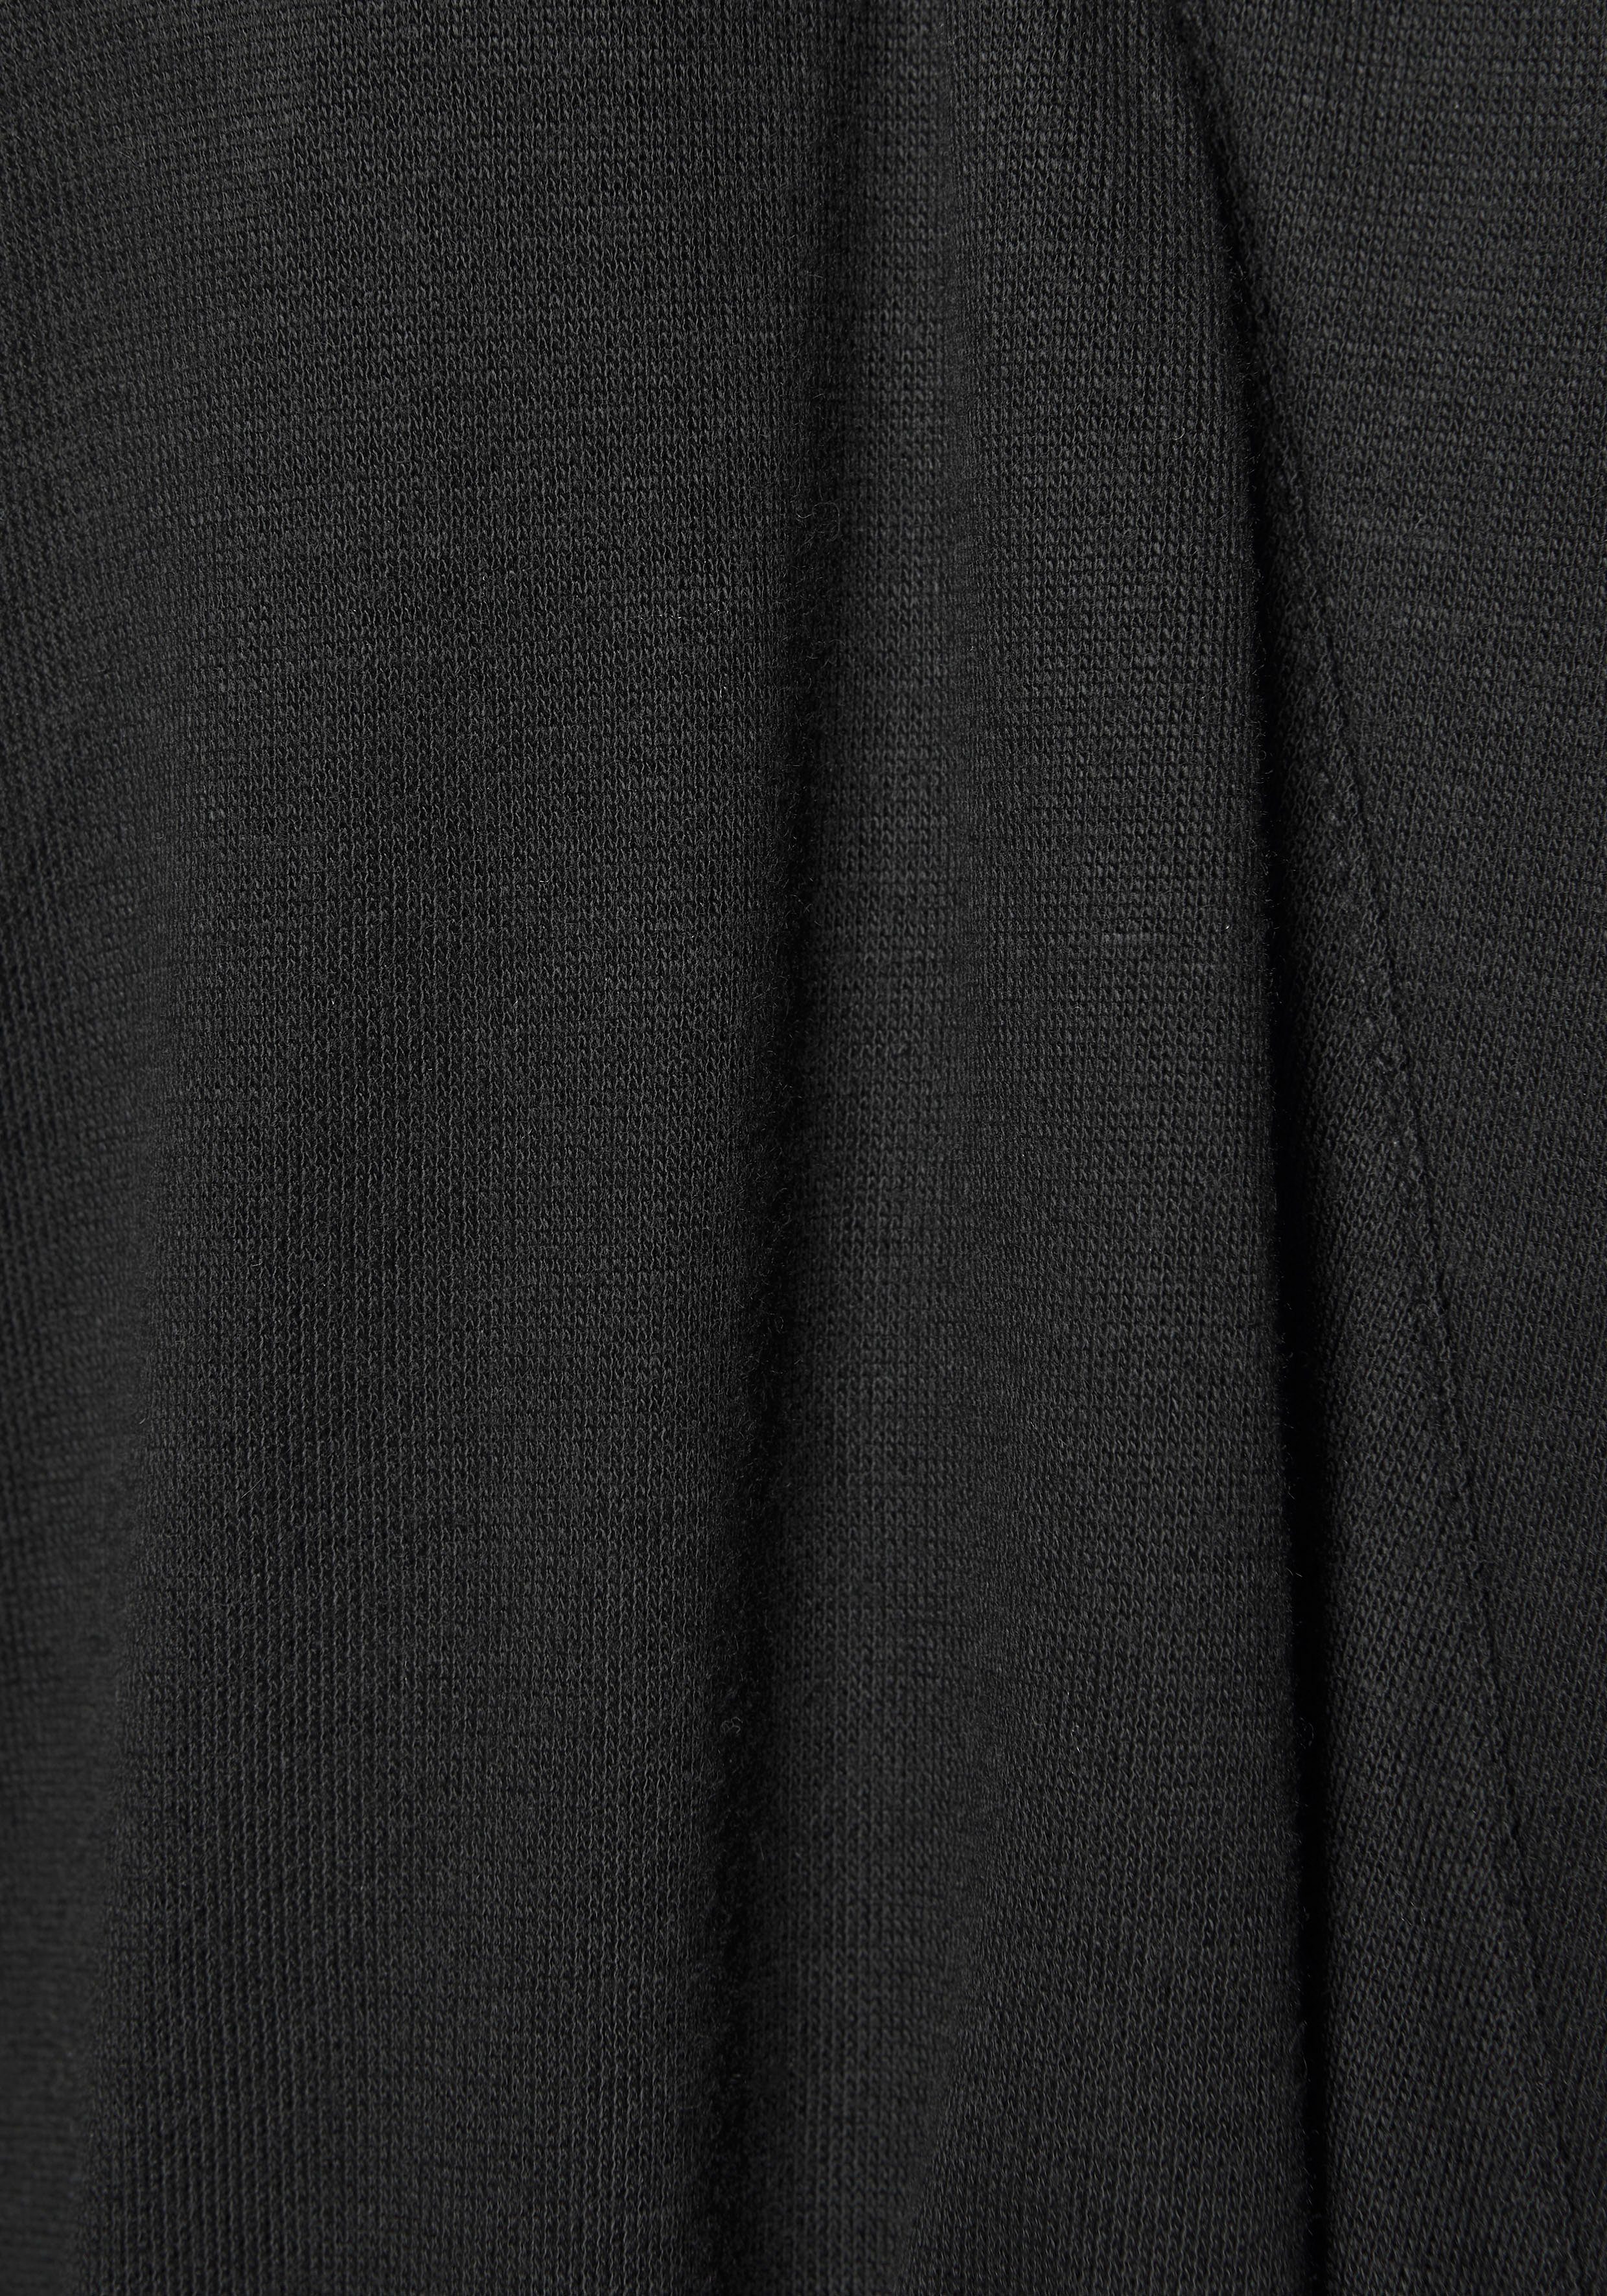 Kurzform, Kimono, und Gürtel, langen mit Spitzen-Details LASCANA schwarz Viskose, Ärmeln